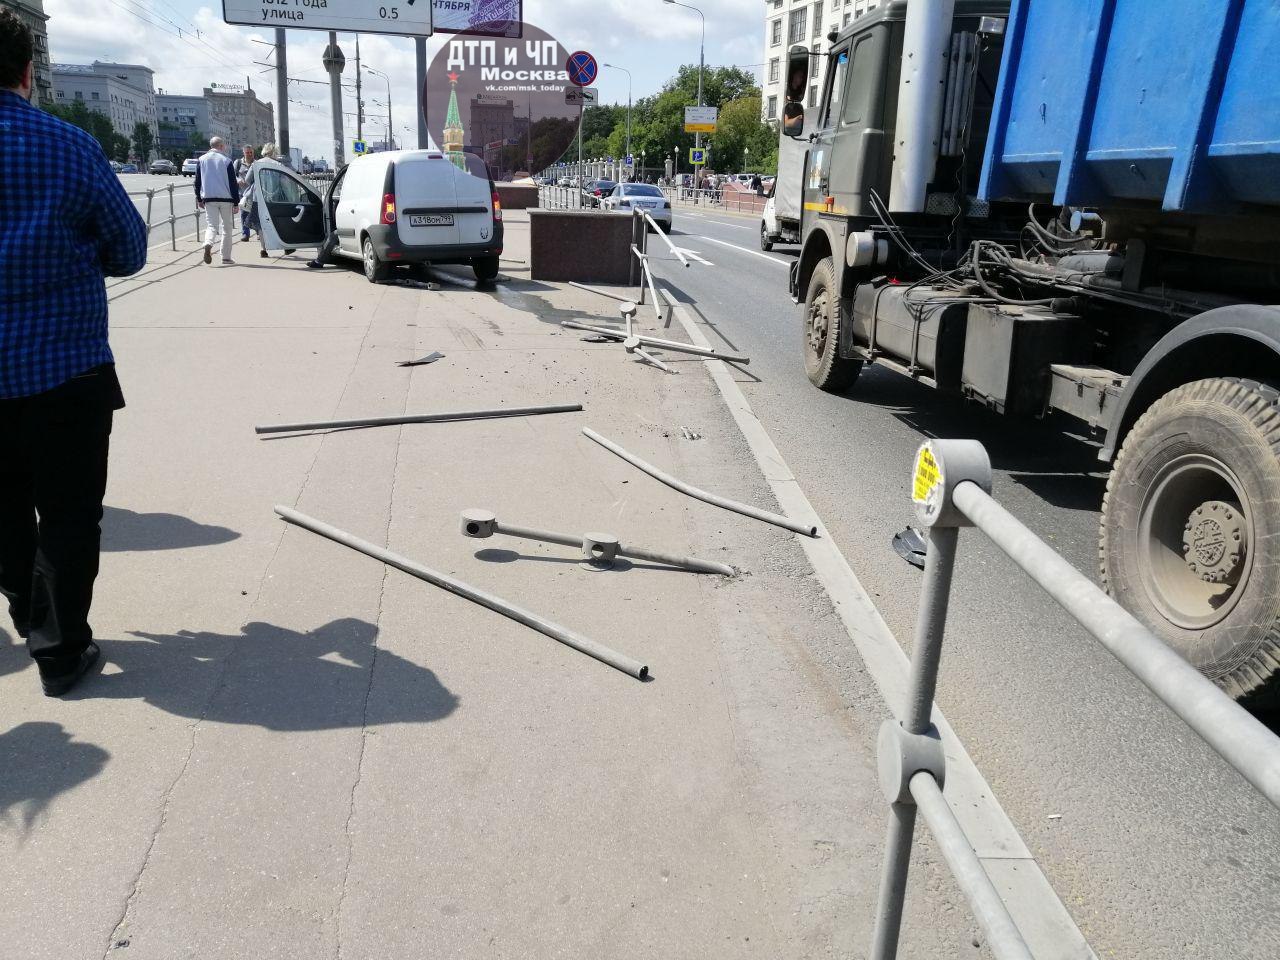 А заборчики на Кутузовской точно спасут пешеходов при аварии?